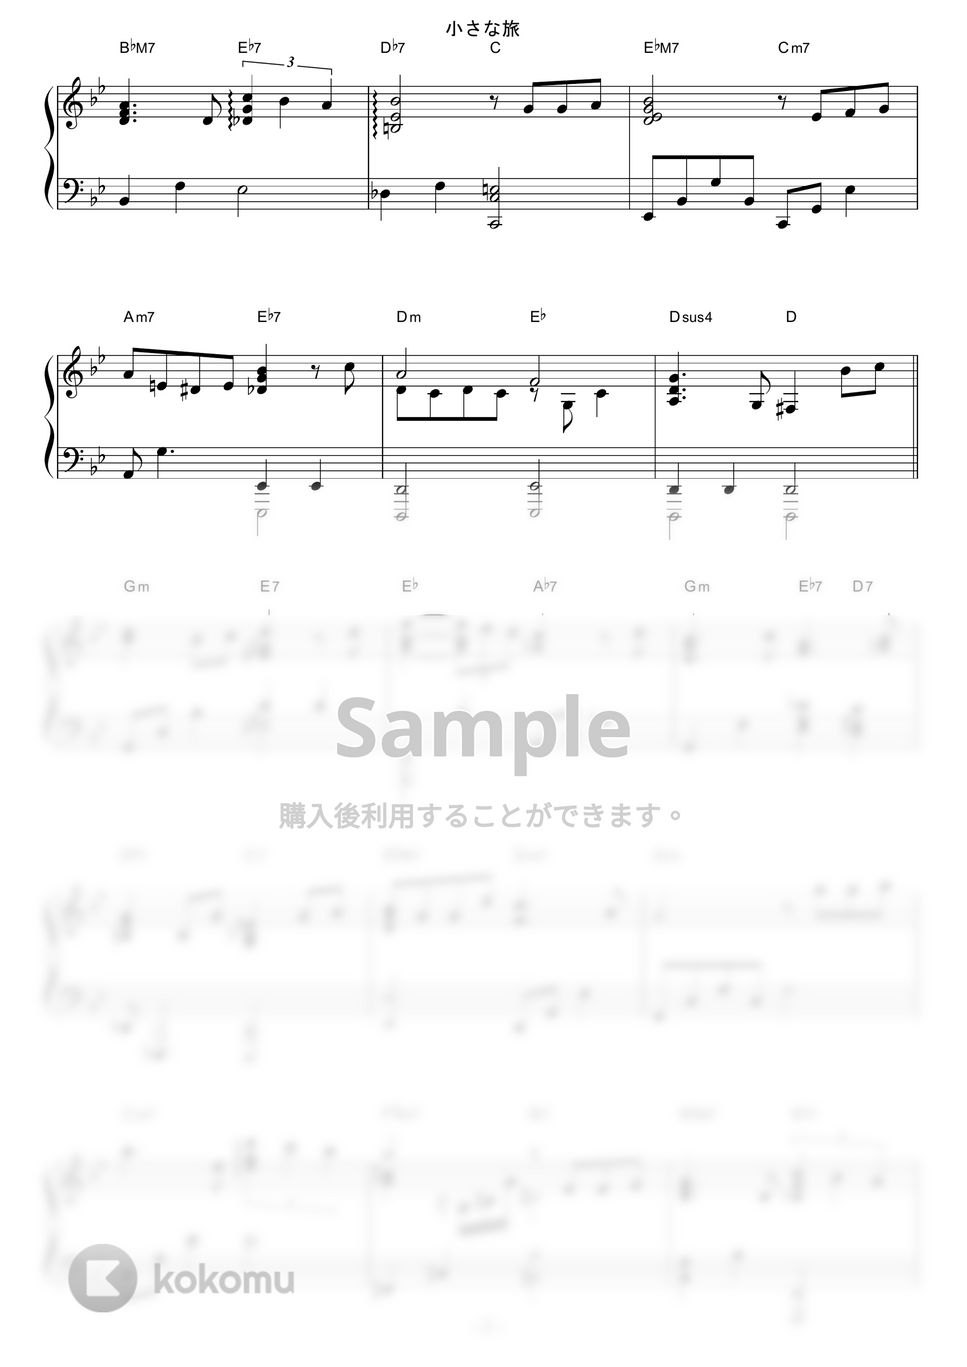 大野雄二 - 小さな旅 (Jazz ver.) by piano*score